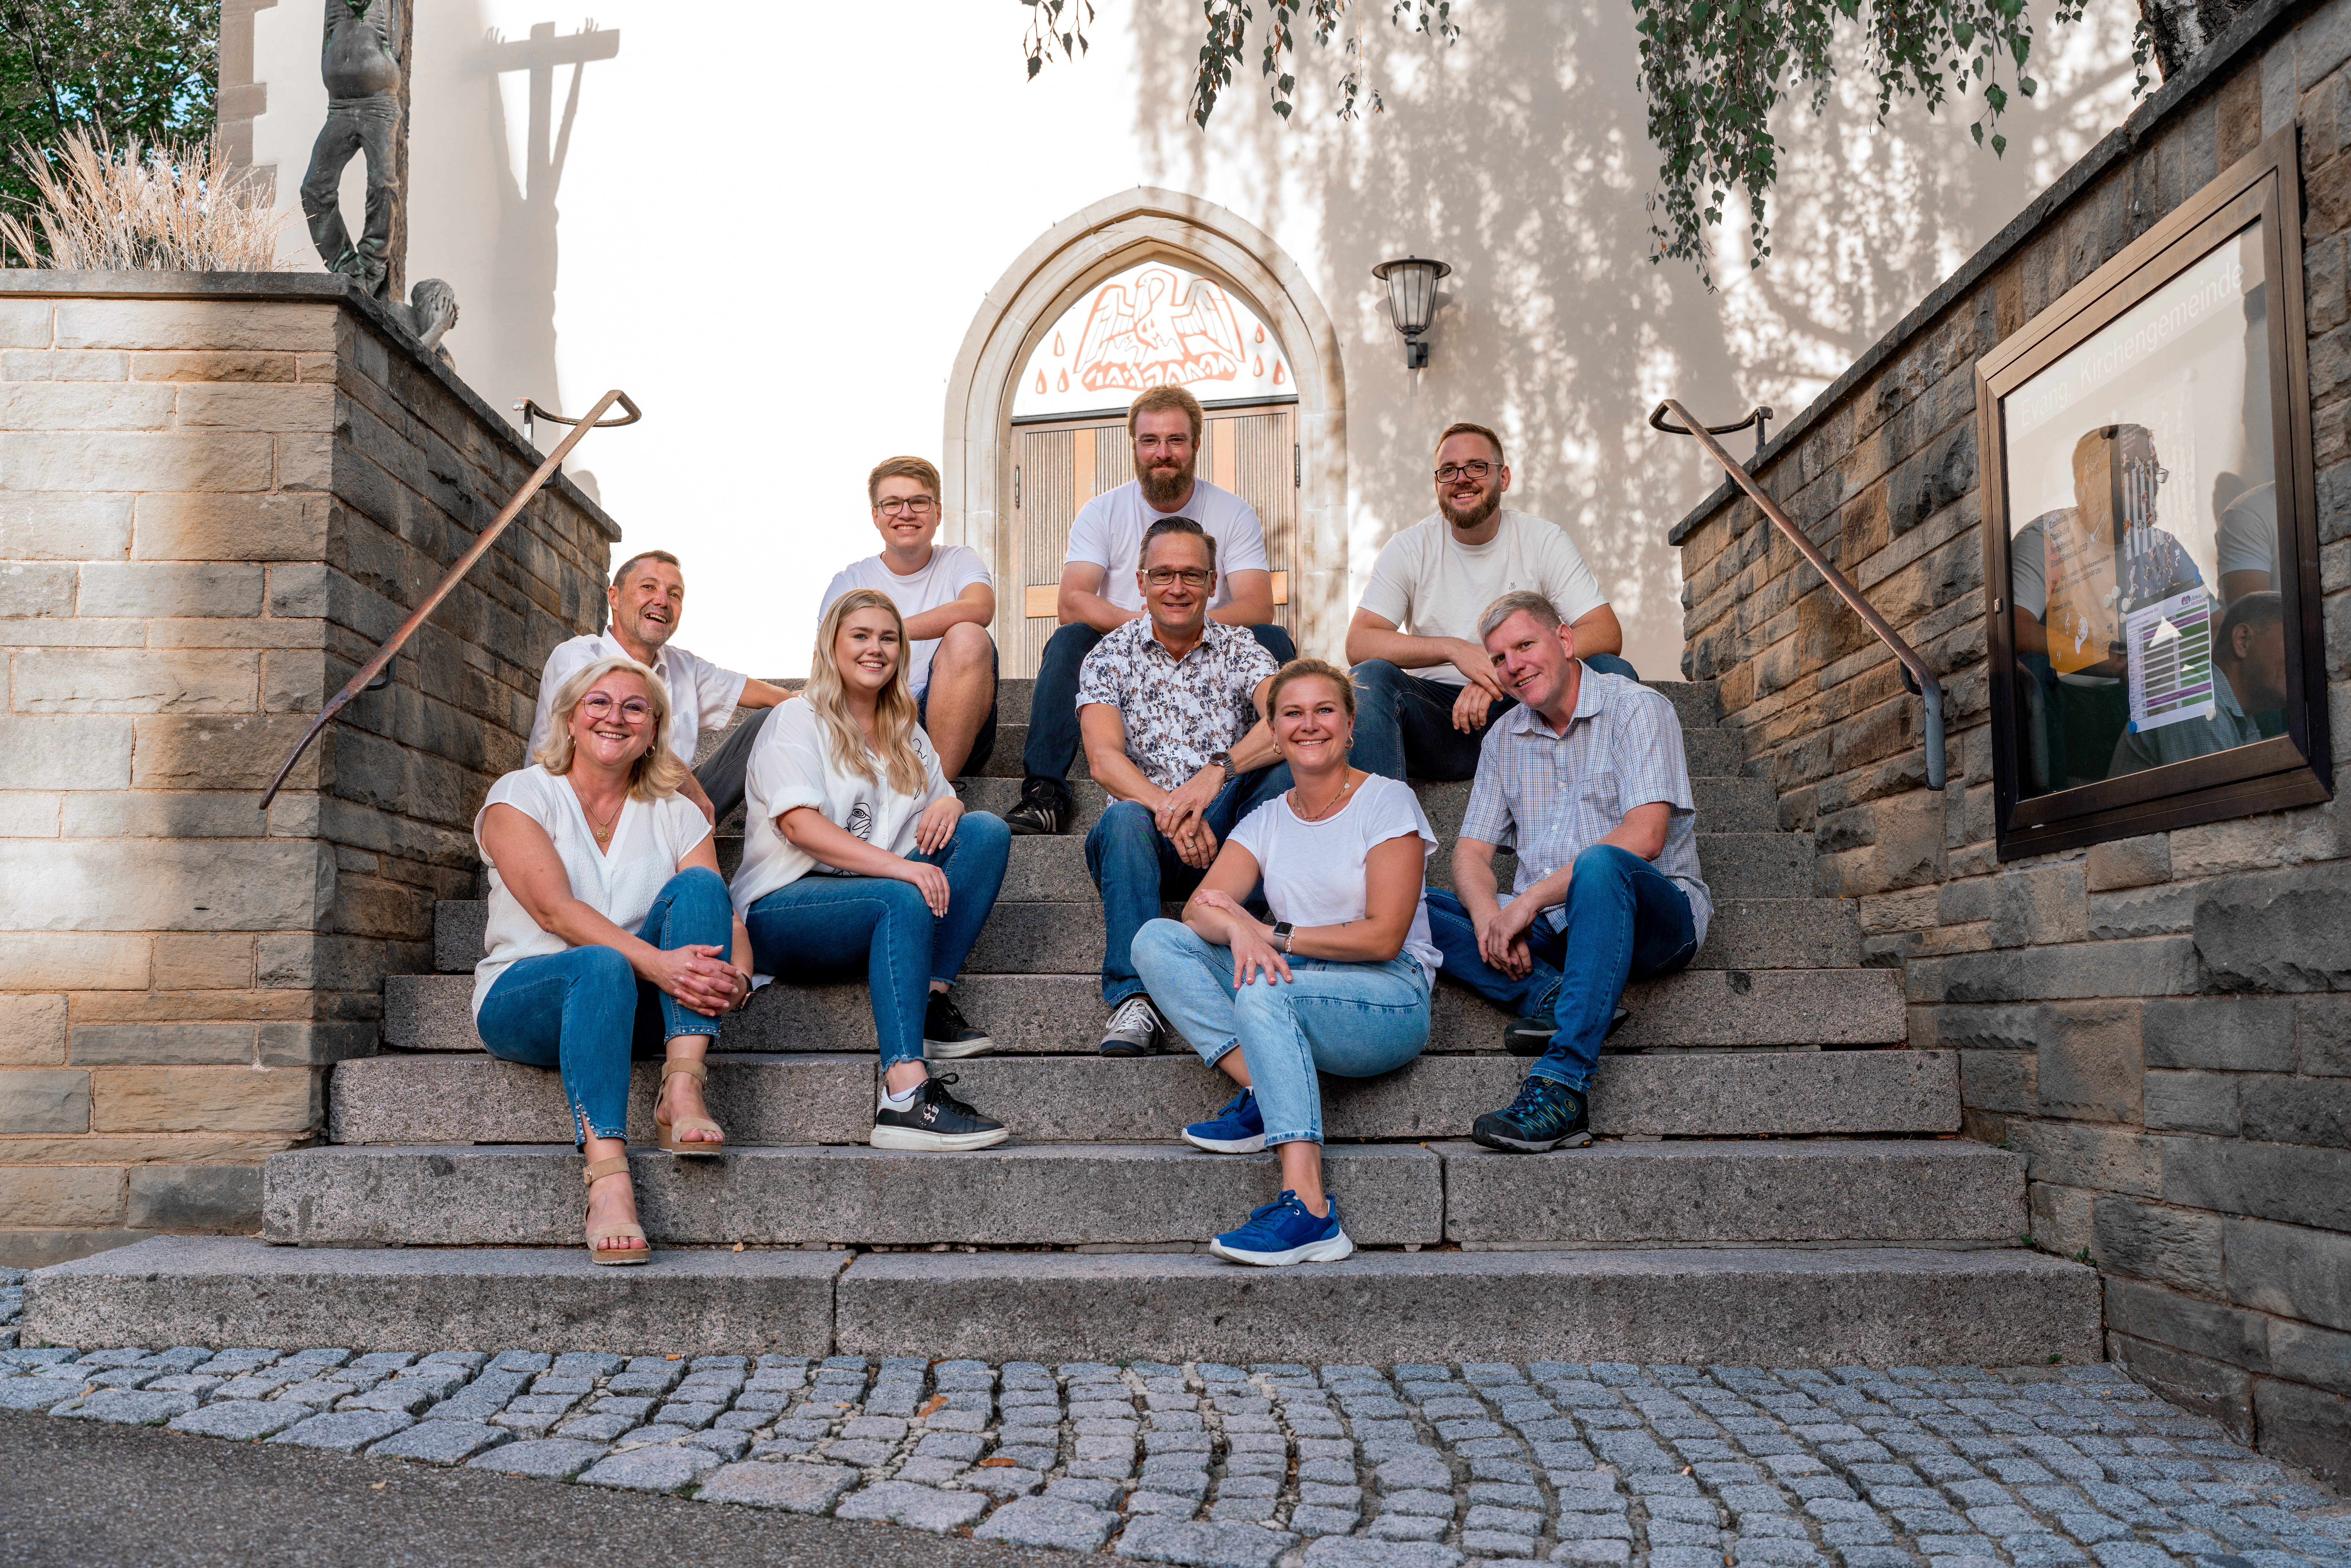 Das Wirtschaftsteam auf der Treppe der Kirche in Löchgau mit neun abgebildeten Mitgliedern